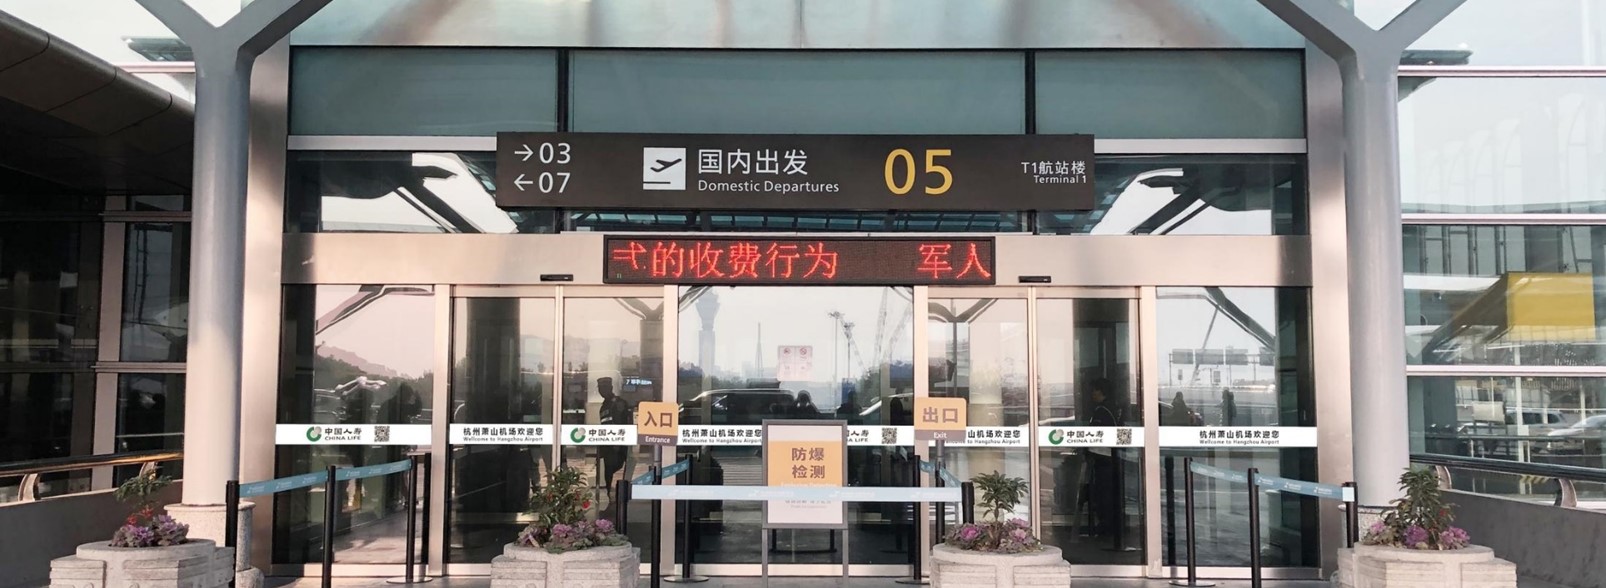 杭州萧山机场广告-航站楼出入口玻璃门防撞条